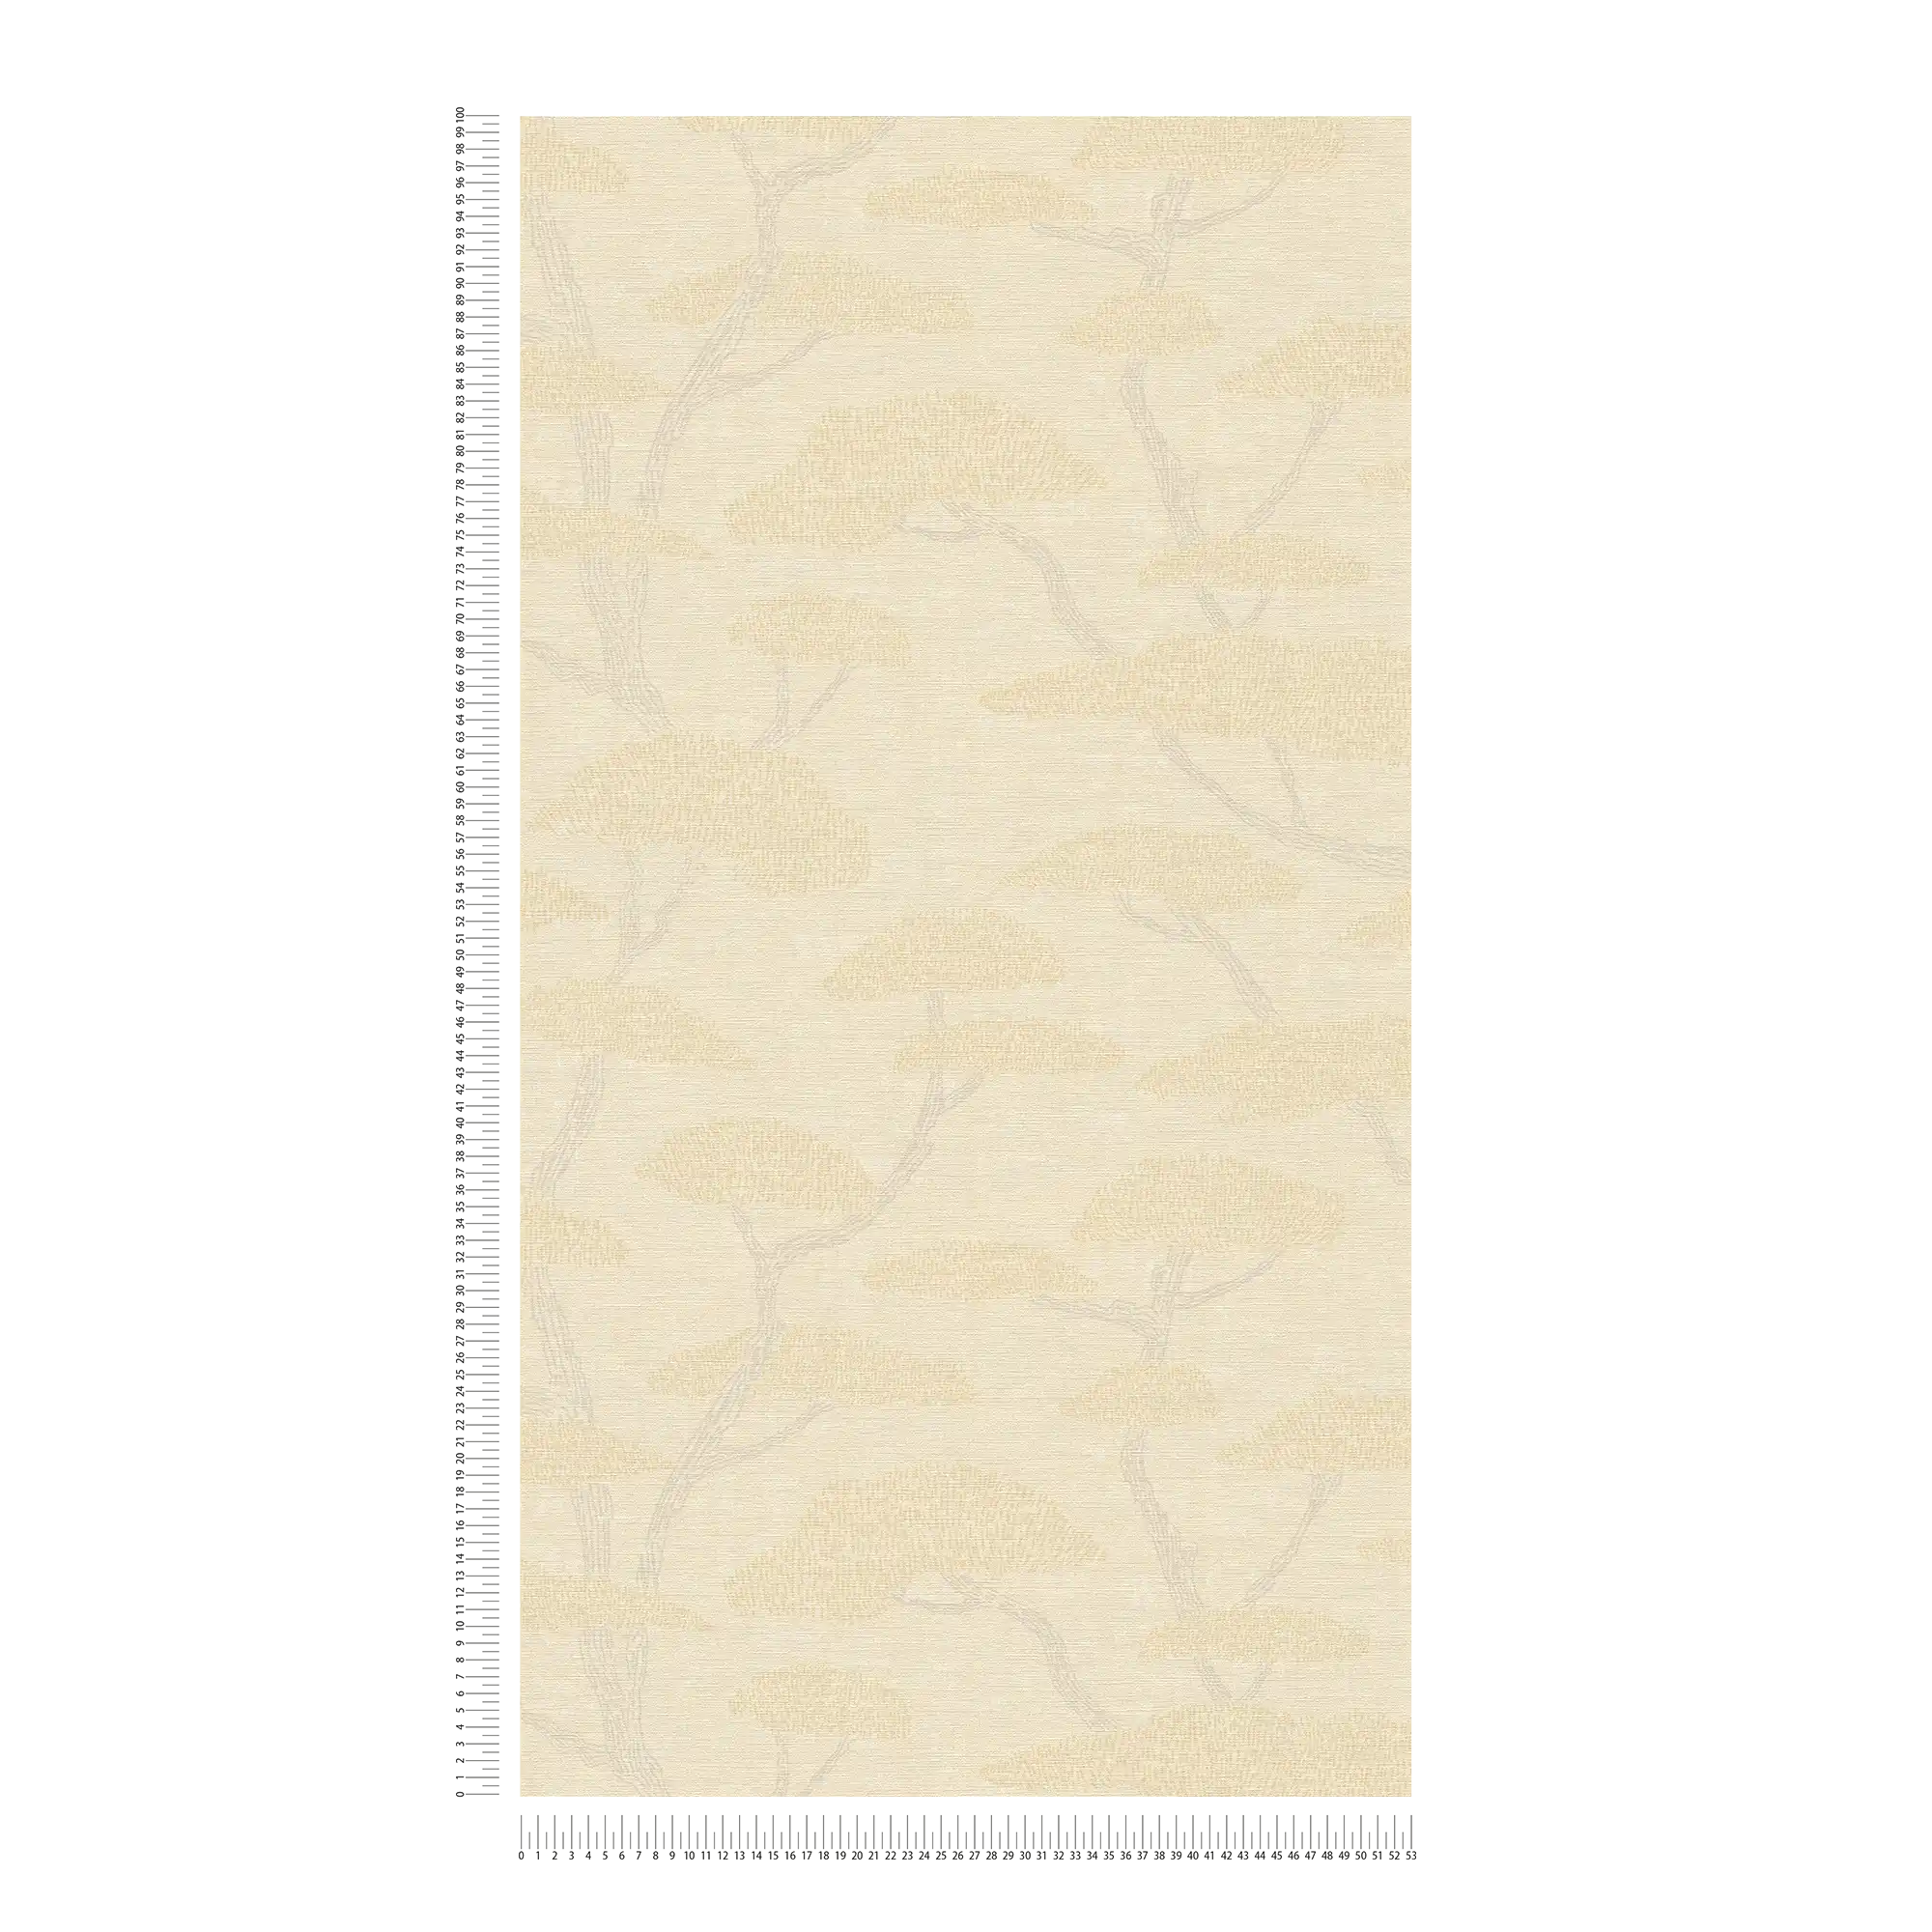             Papier peint Vintage Arbre Design Pins - Crème, Beige
        